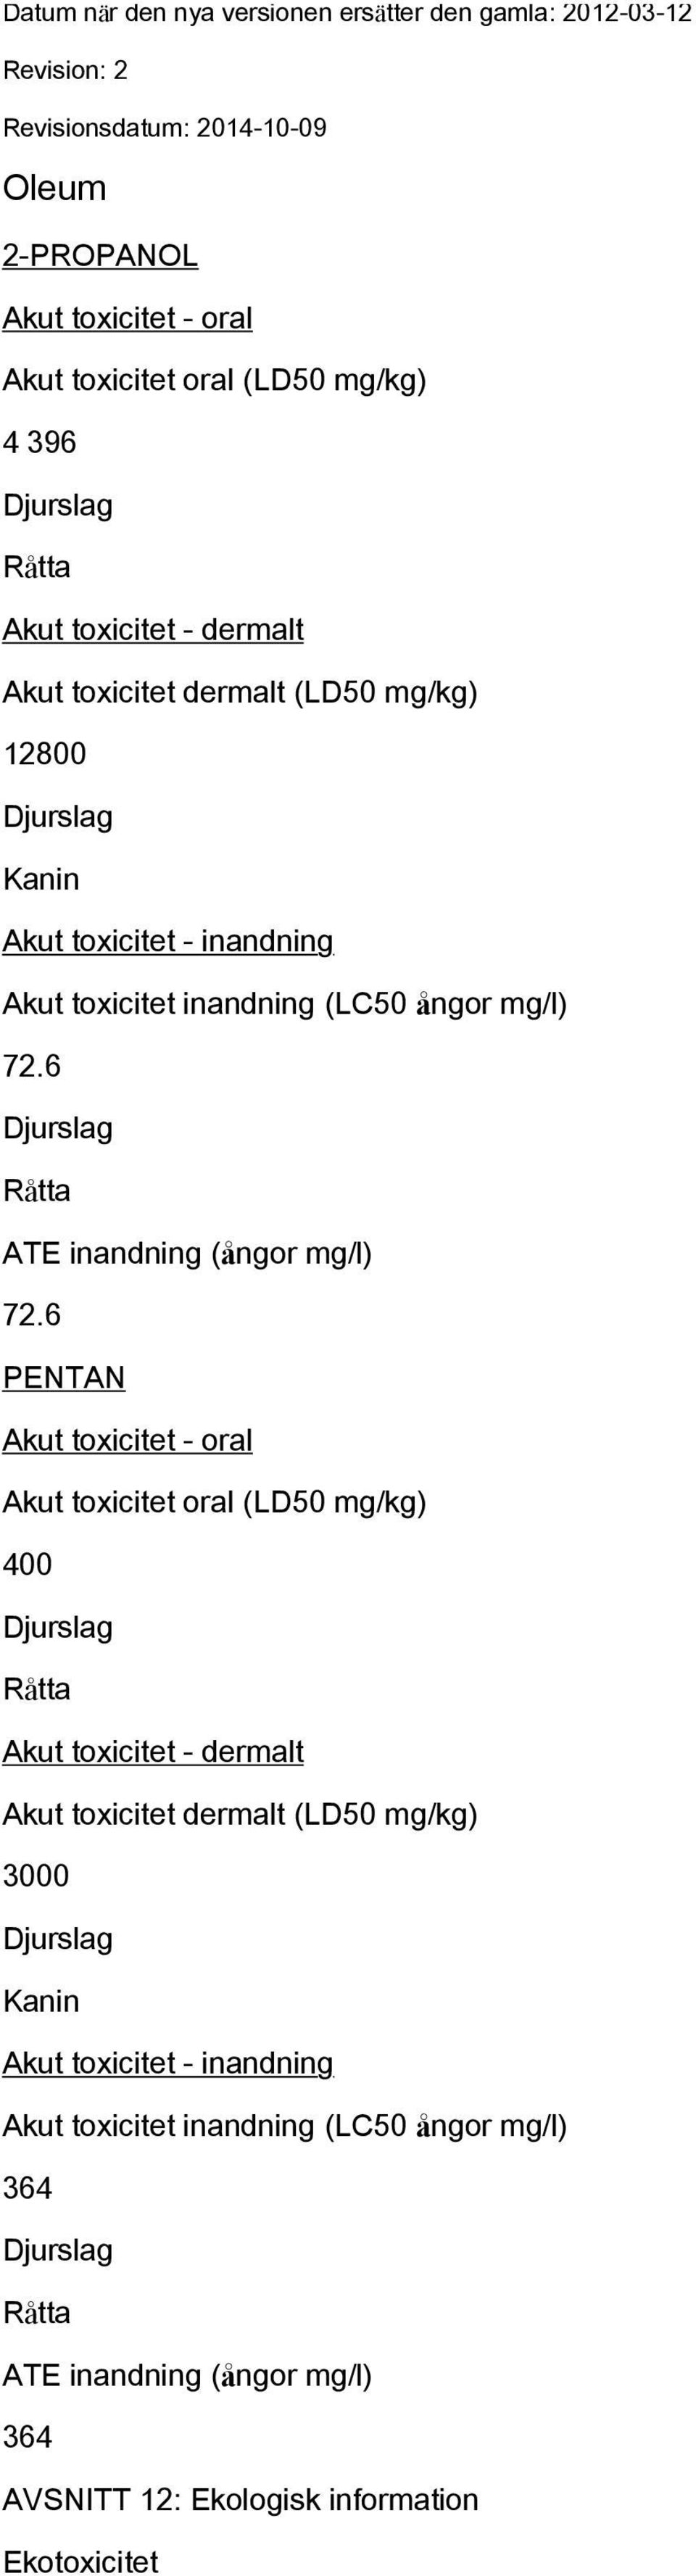 6 PENTAN Akut toxicitet - oral Akut toxicitet oral (LD50 mg/kg) 400 Råtta Akut toxicitet - dermalt Akut toxicitet dermalt (LD50 mg/kg) 3000